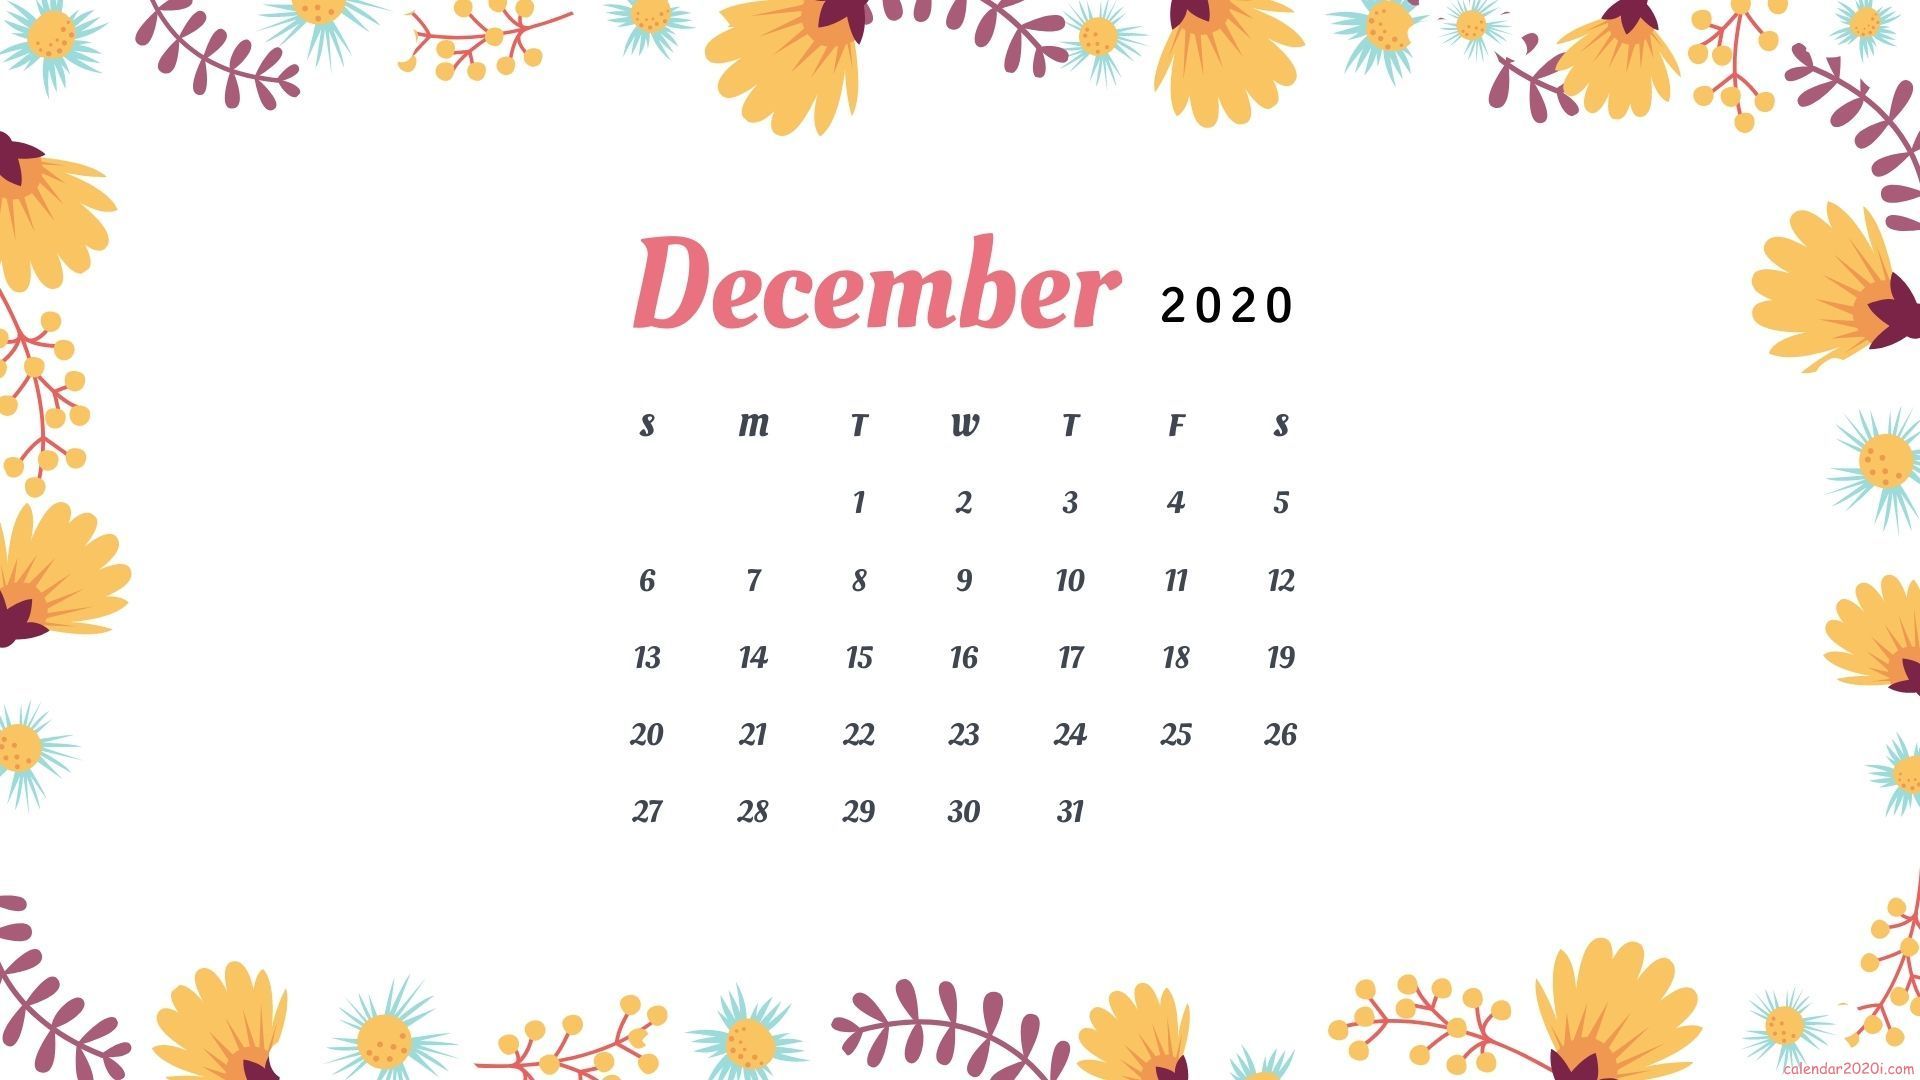 December 2020 desktop background calendar wallpaper in high quality. Calendar wallpaper, Desktop calendar, Flower calendar